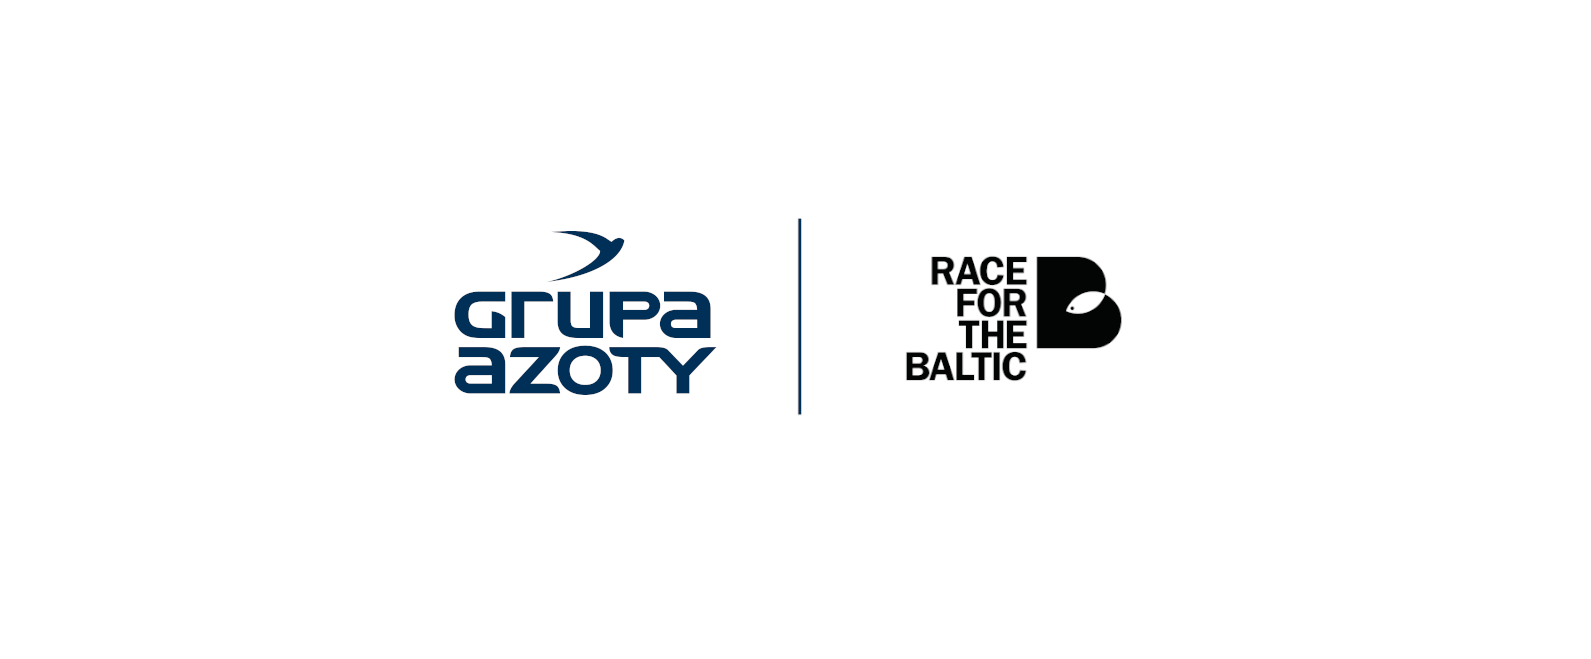                        Grupa Azoty Police i Fundacja Race For The Baltic łączą siły w trosce o środowisko naturalne